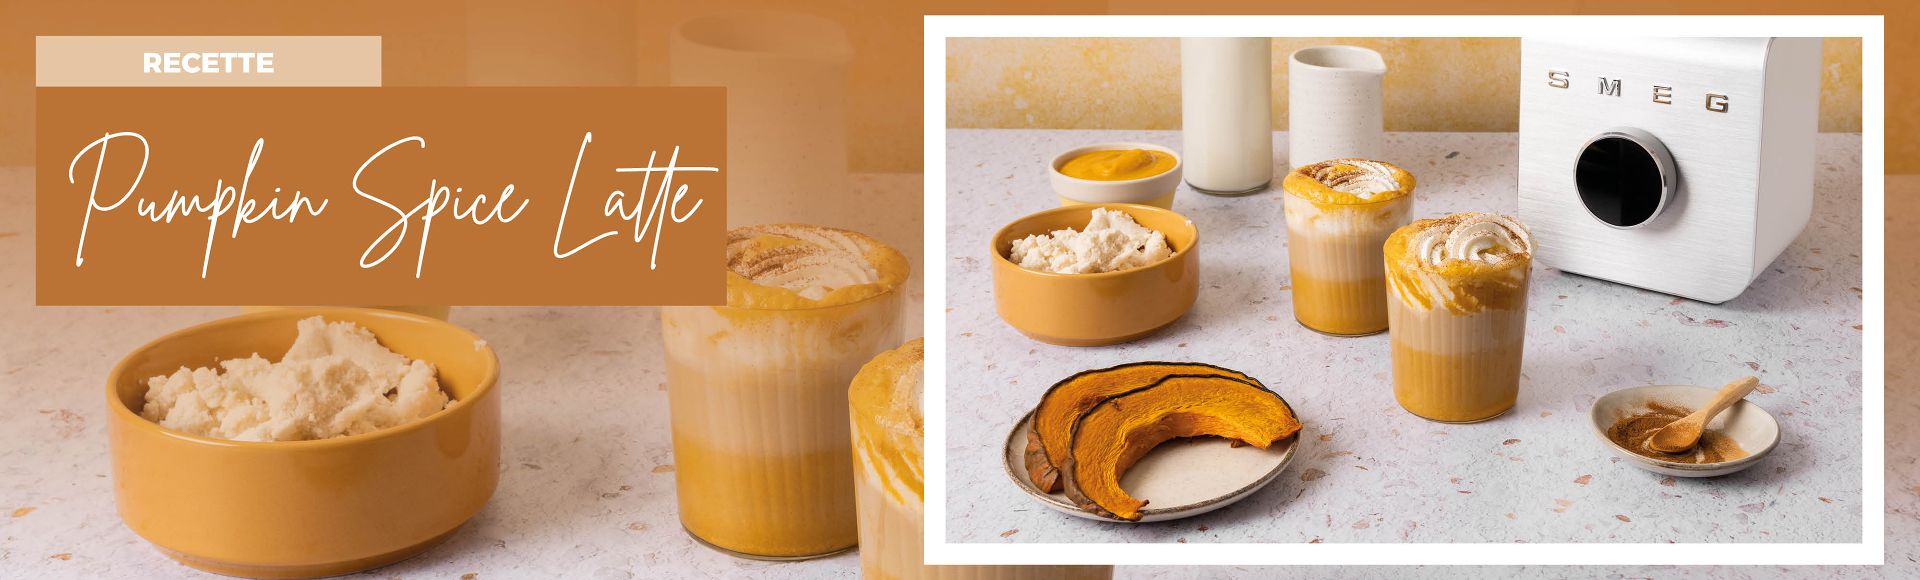 La recette de Pumpkin Spice Latte de SMEG